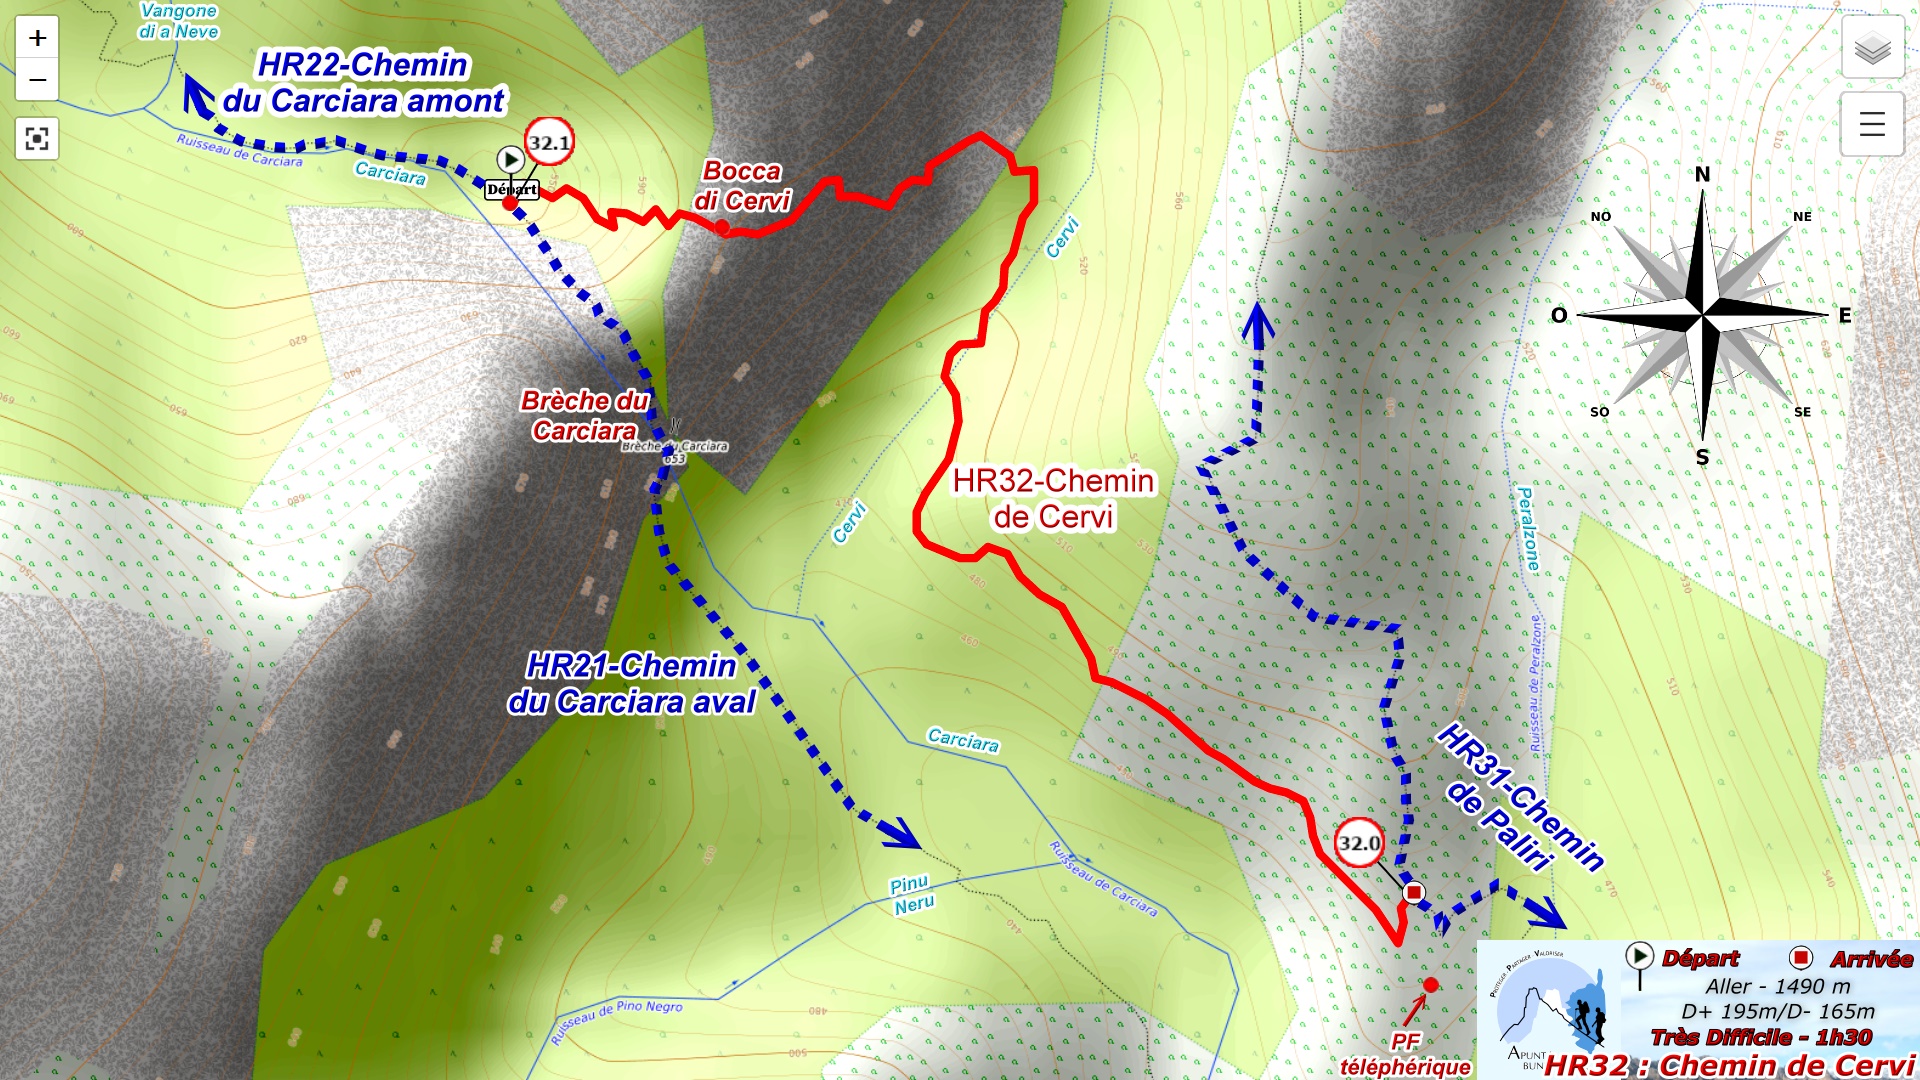 Plan HR32 : Chemin de Cervi